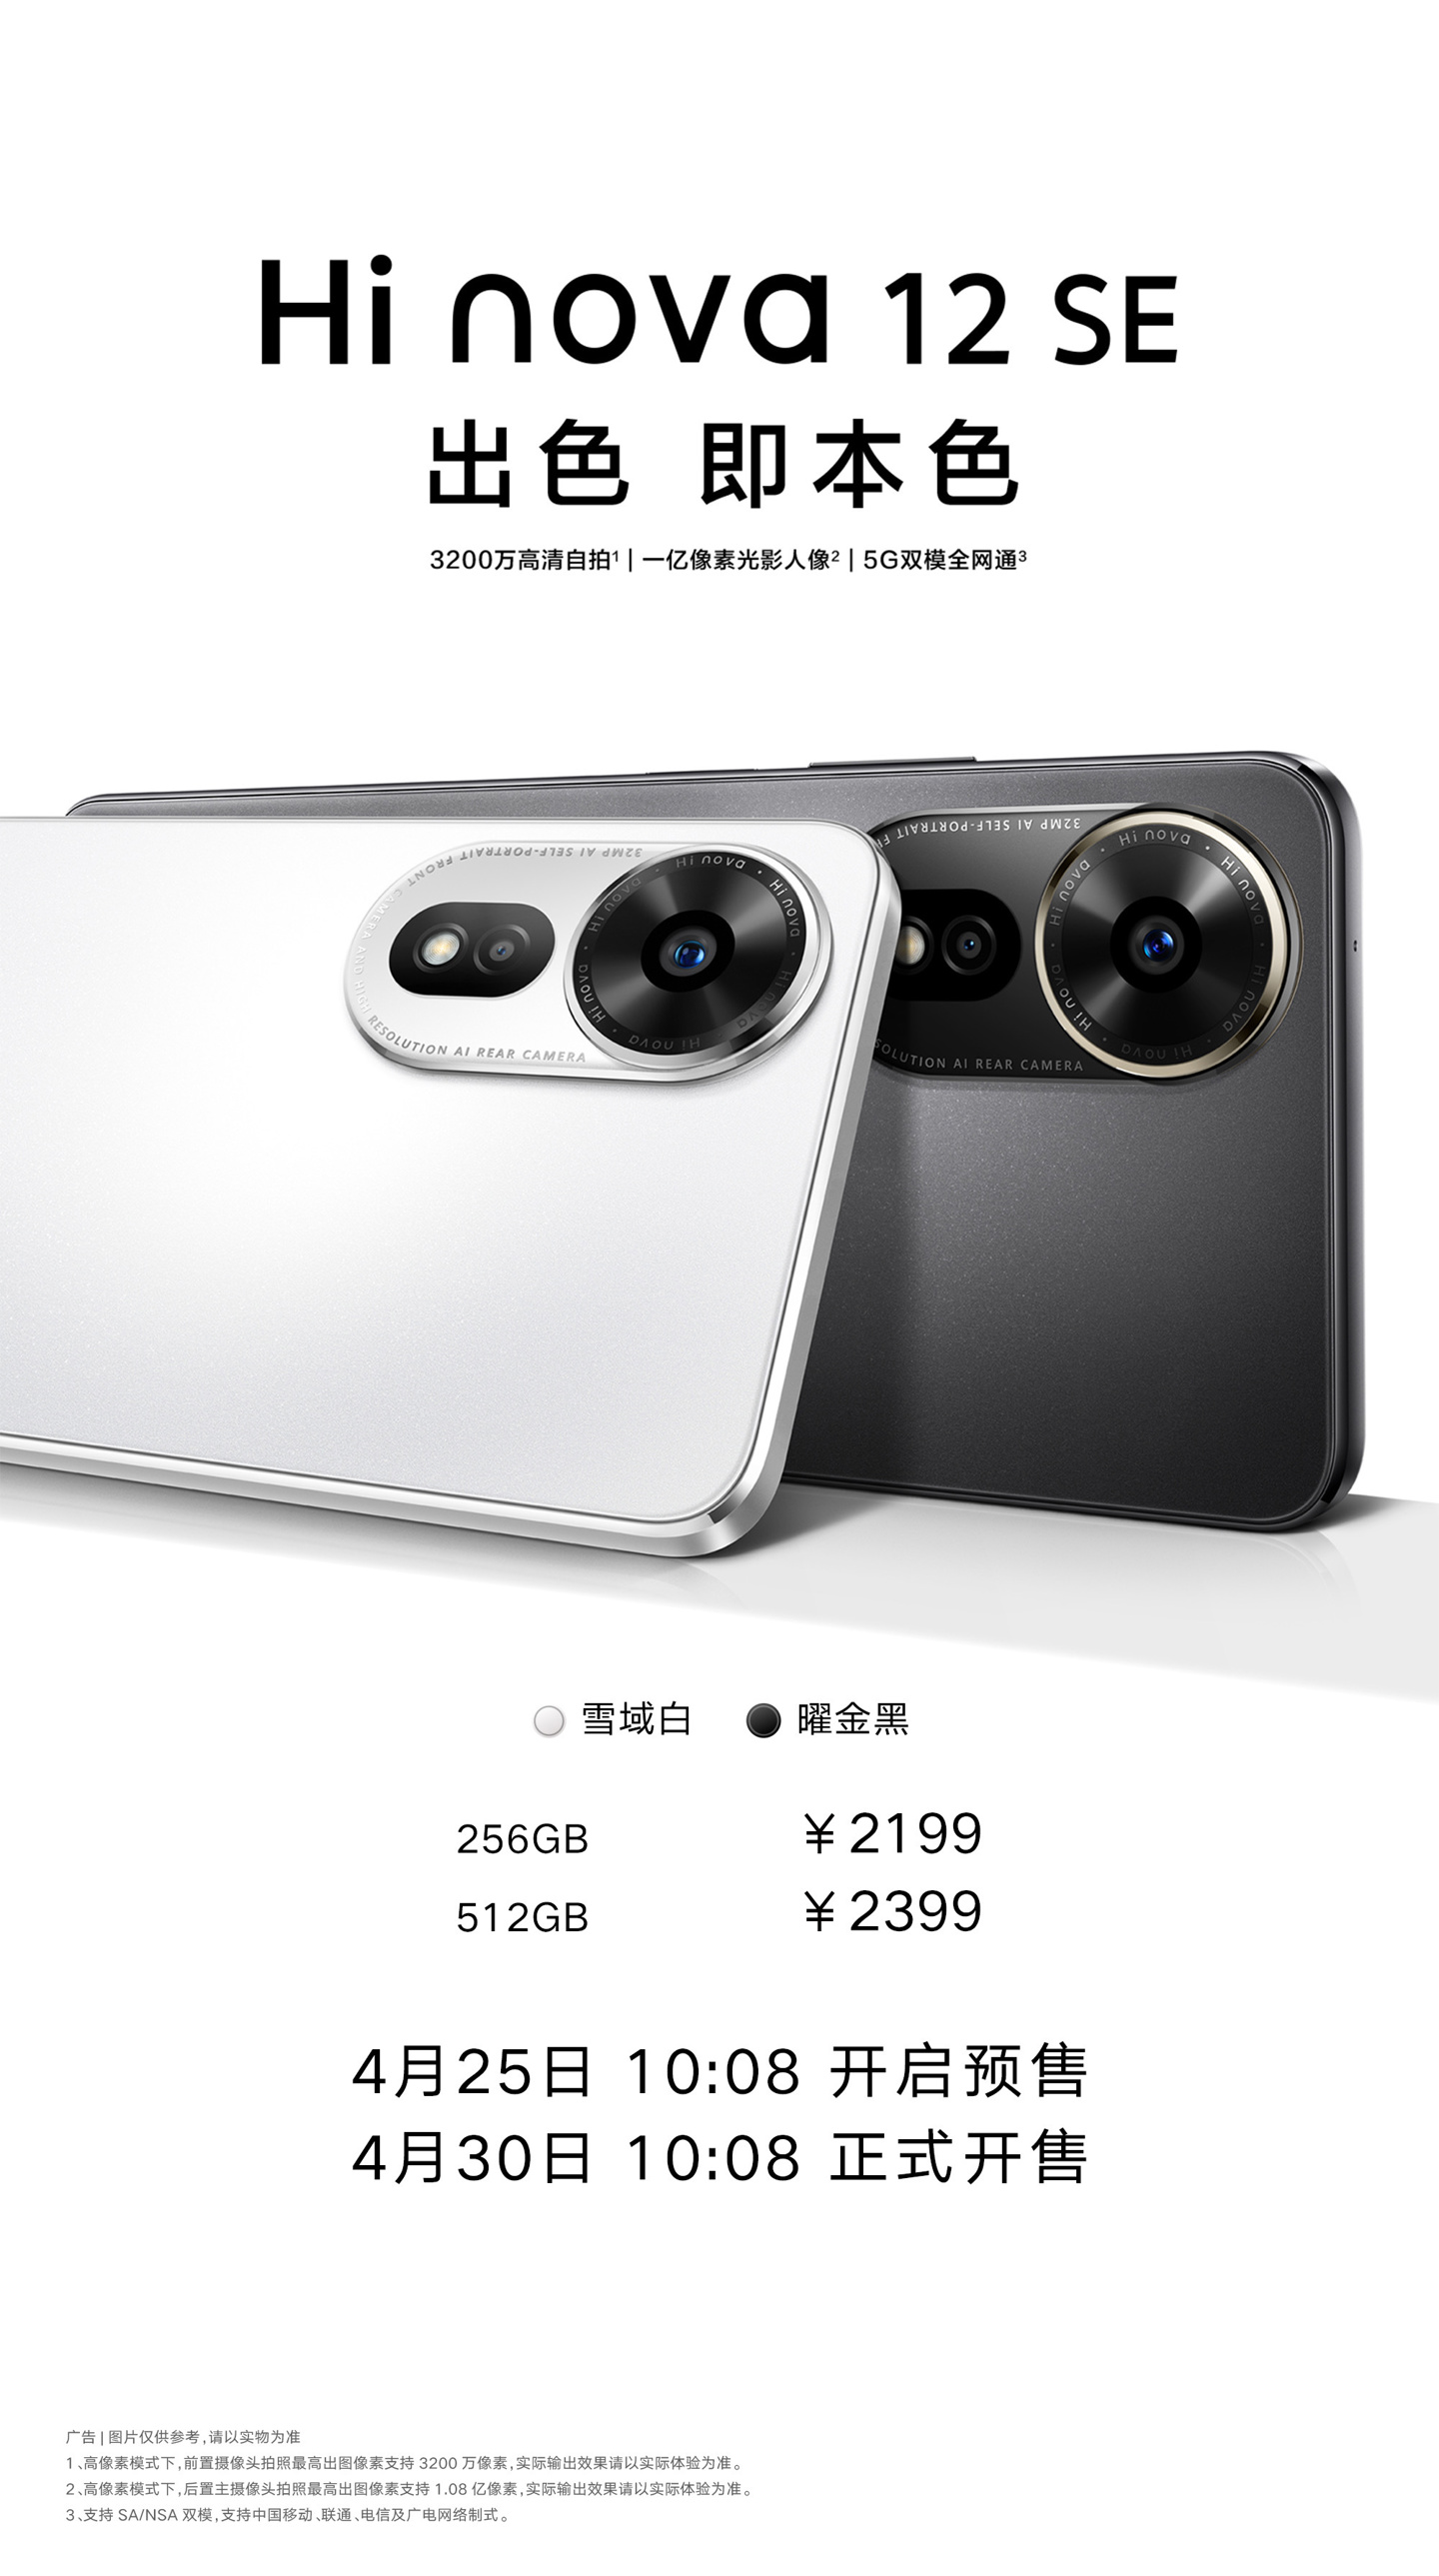 中邮通信 Hi nova 12 SE 手机发布，2199 元起